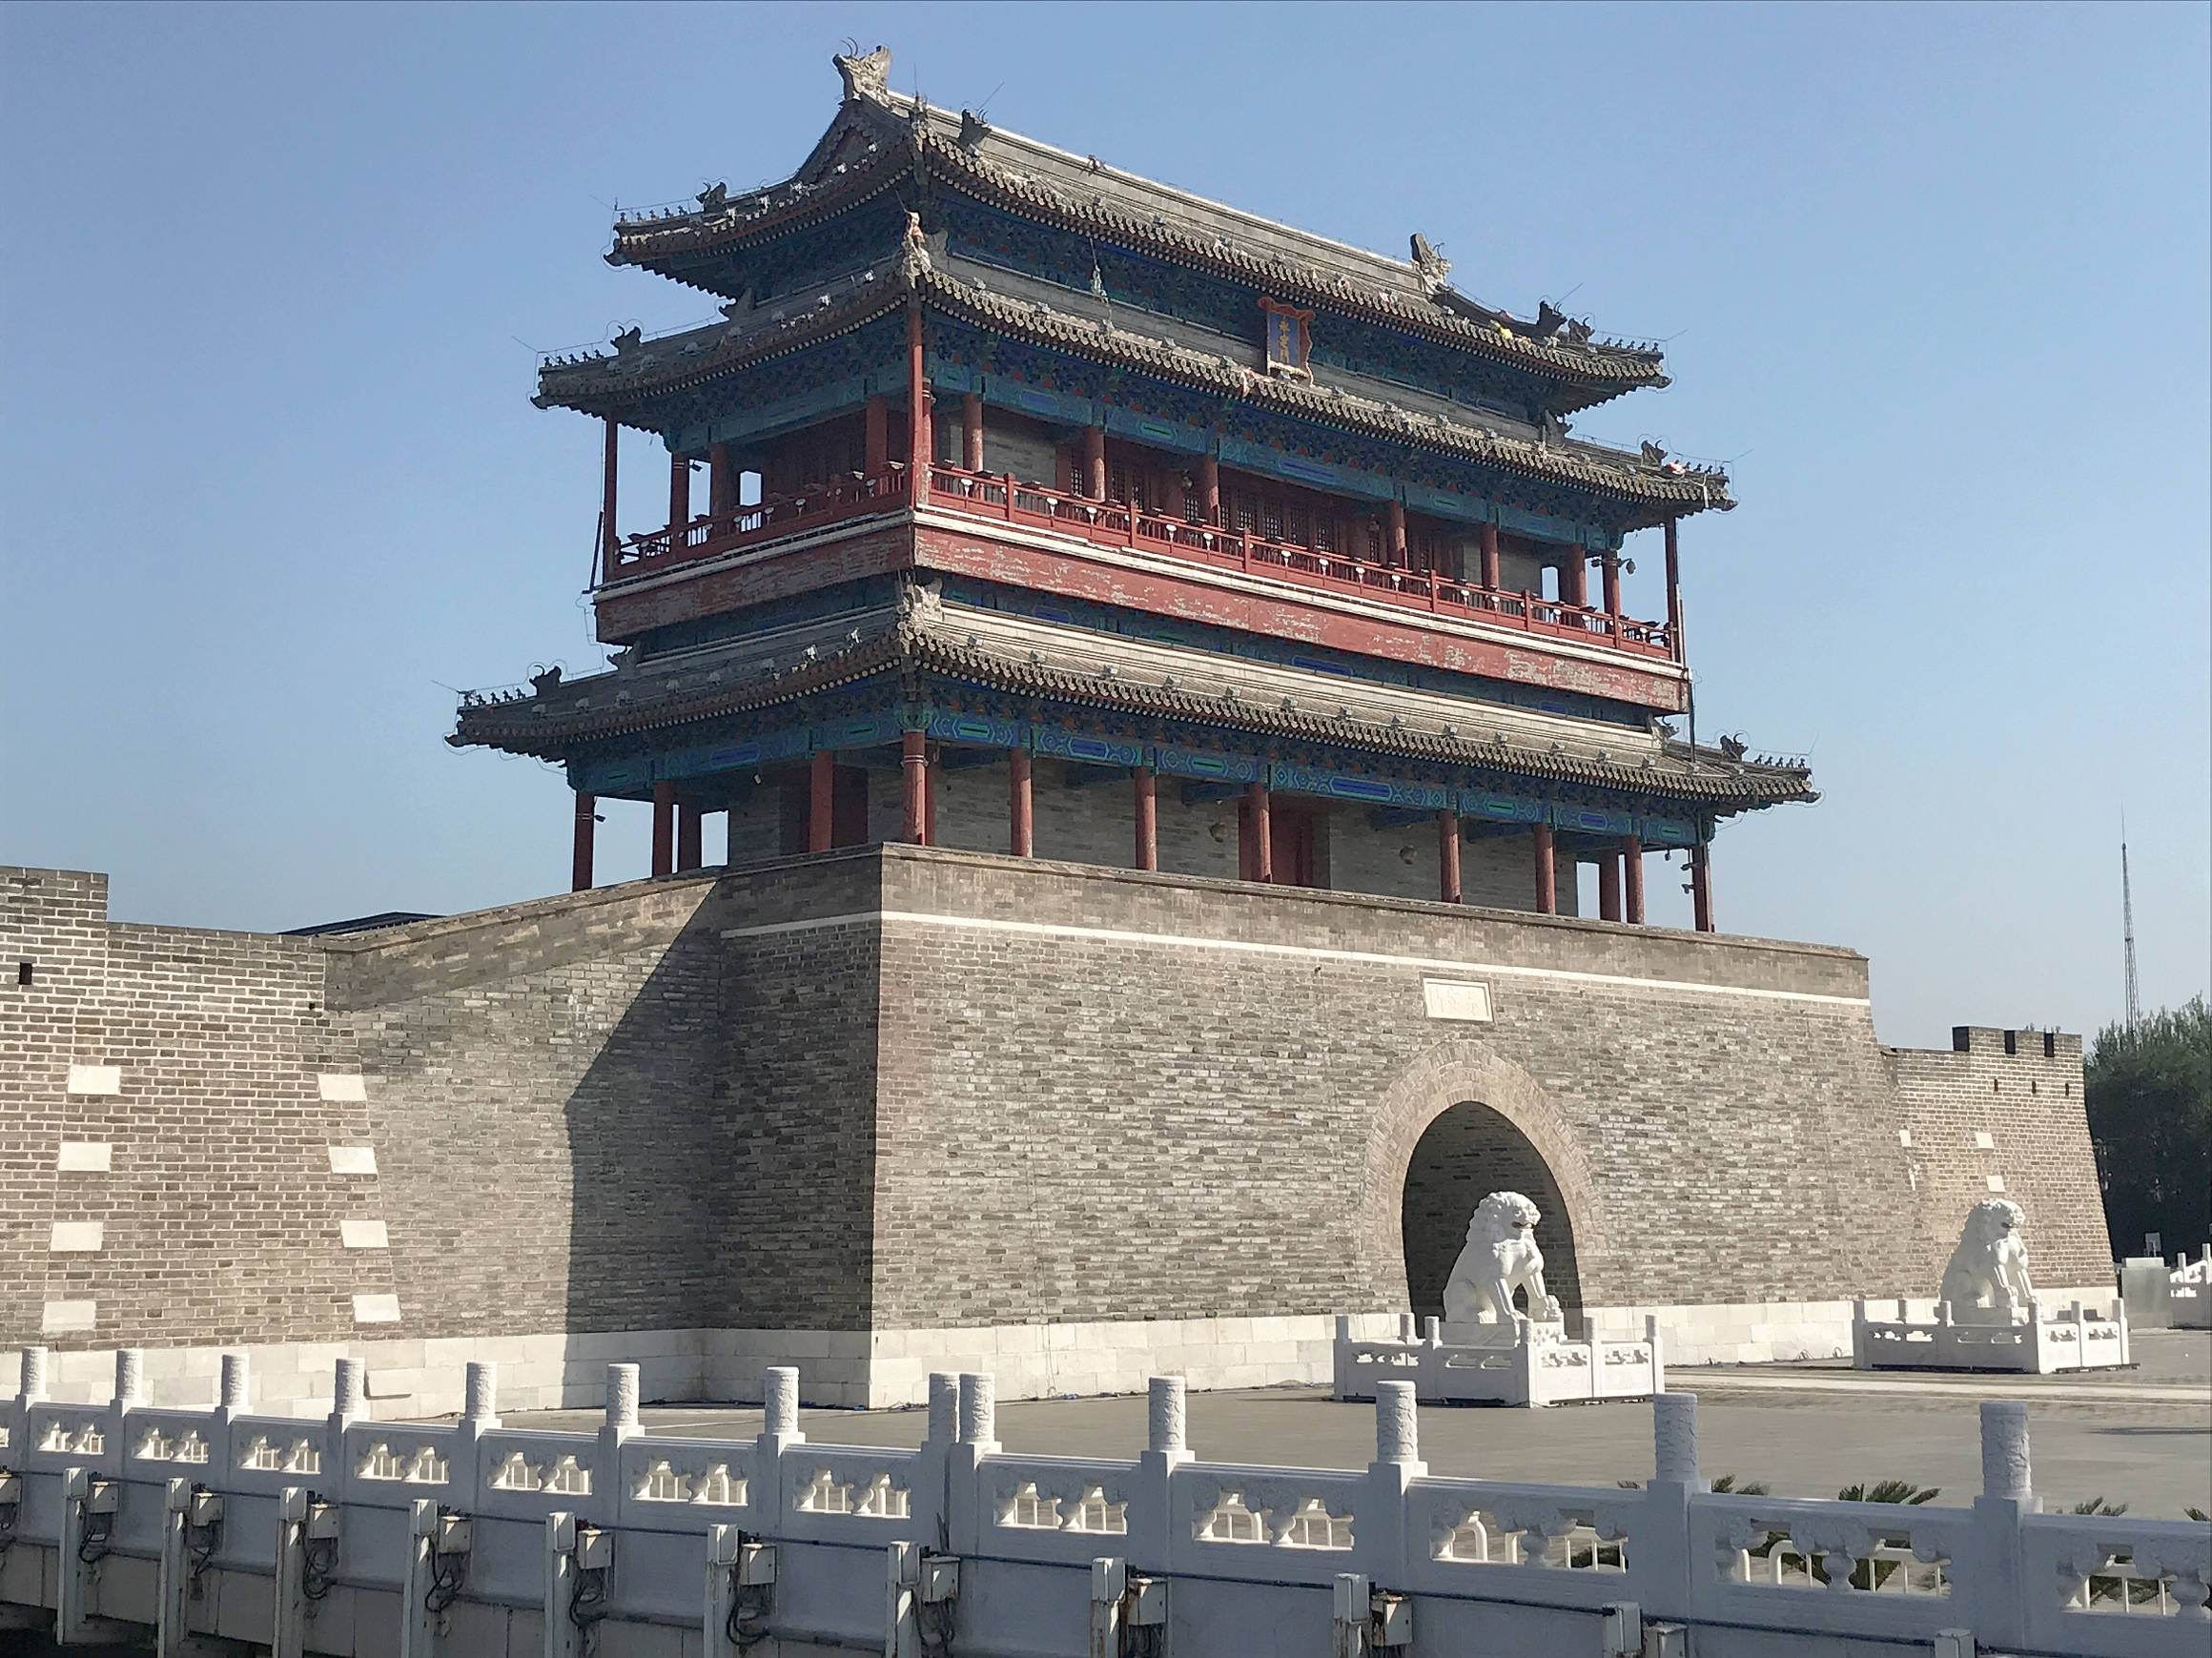 往北走就是永定门公园,为开放式带状公园,北京重要的历史文化街区